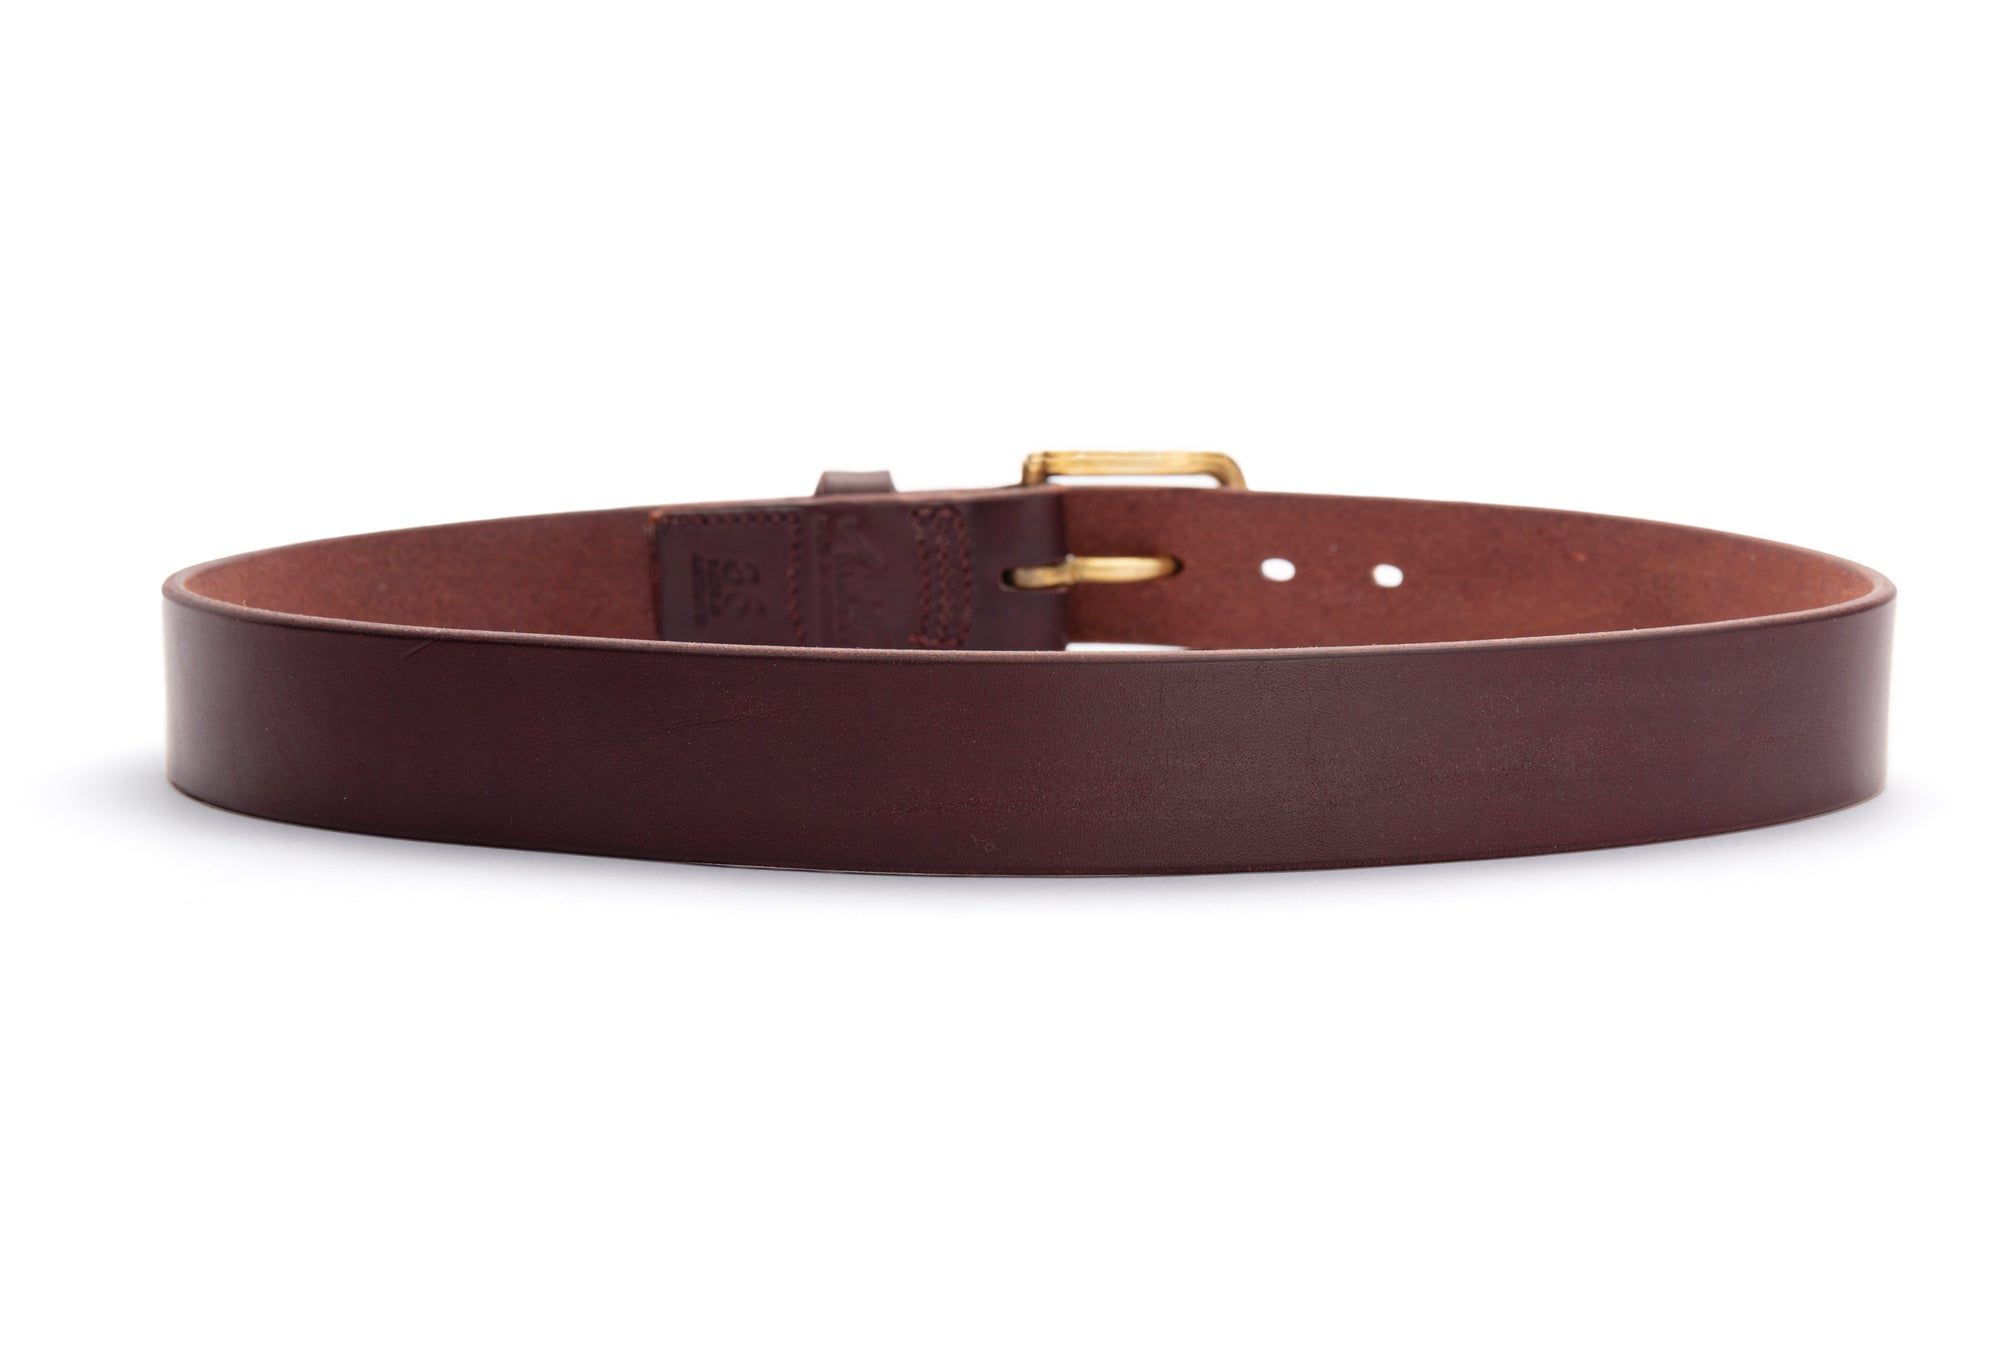 Brunett Leather Casual Belt | Angus Barrett Saddlery